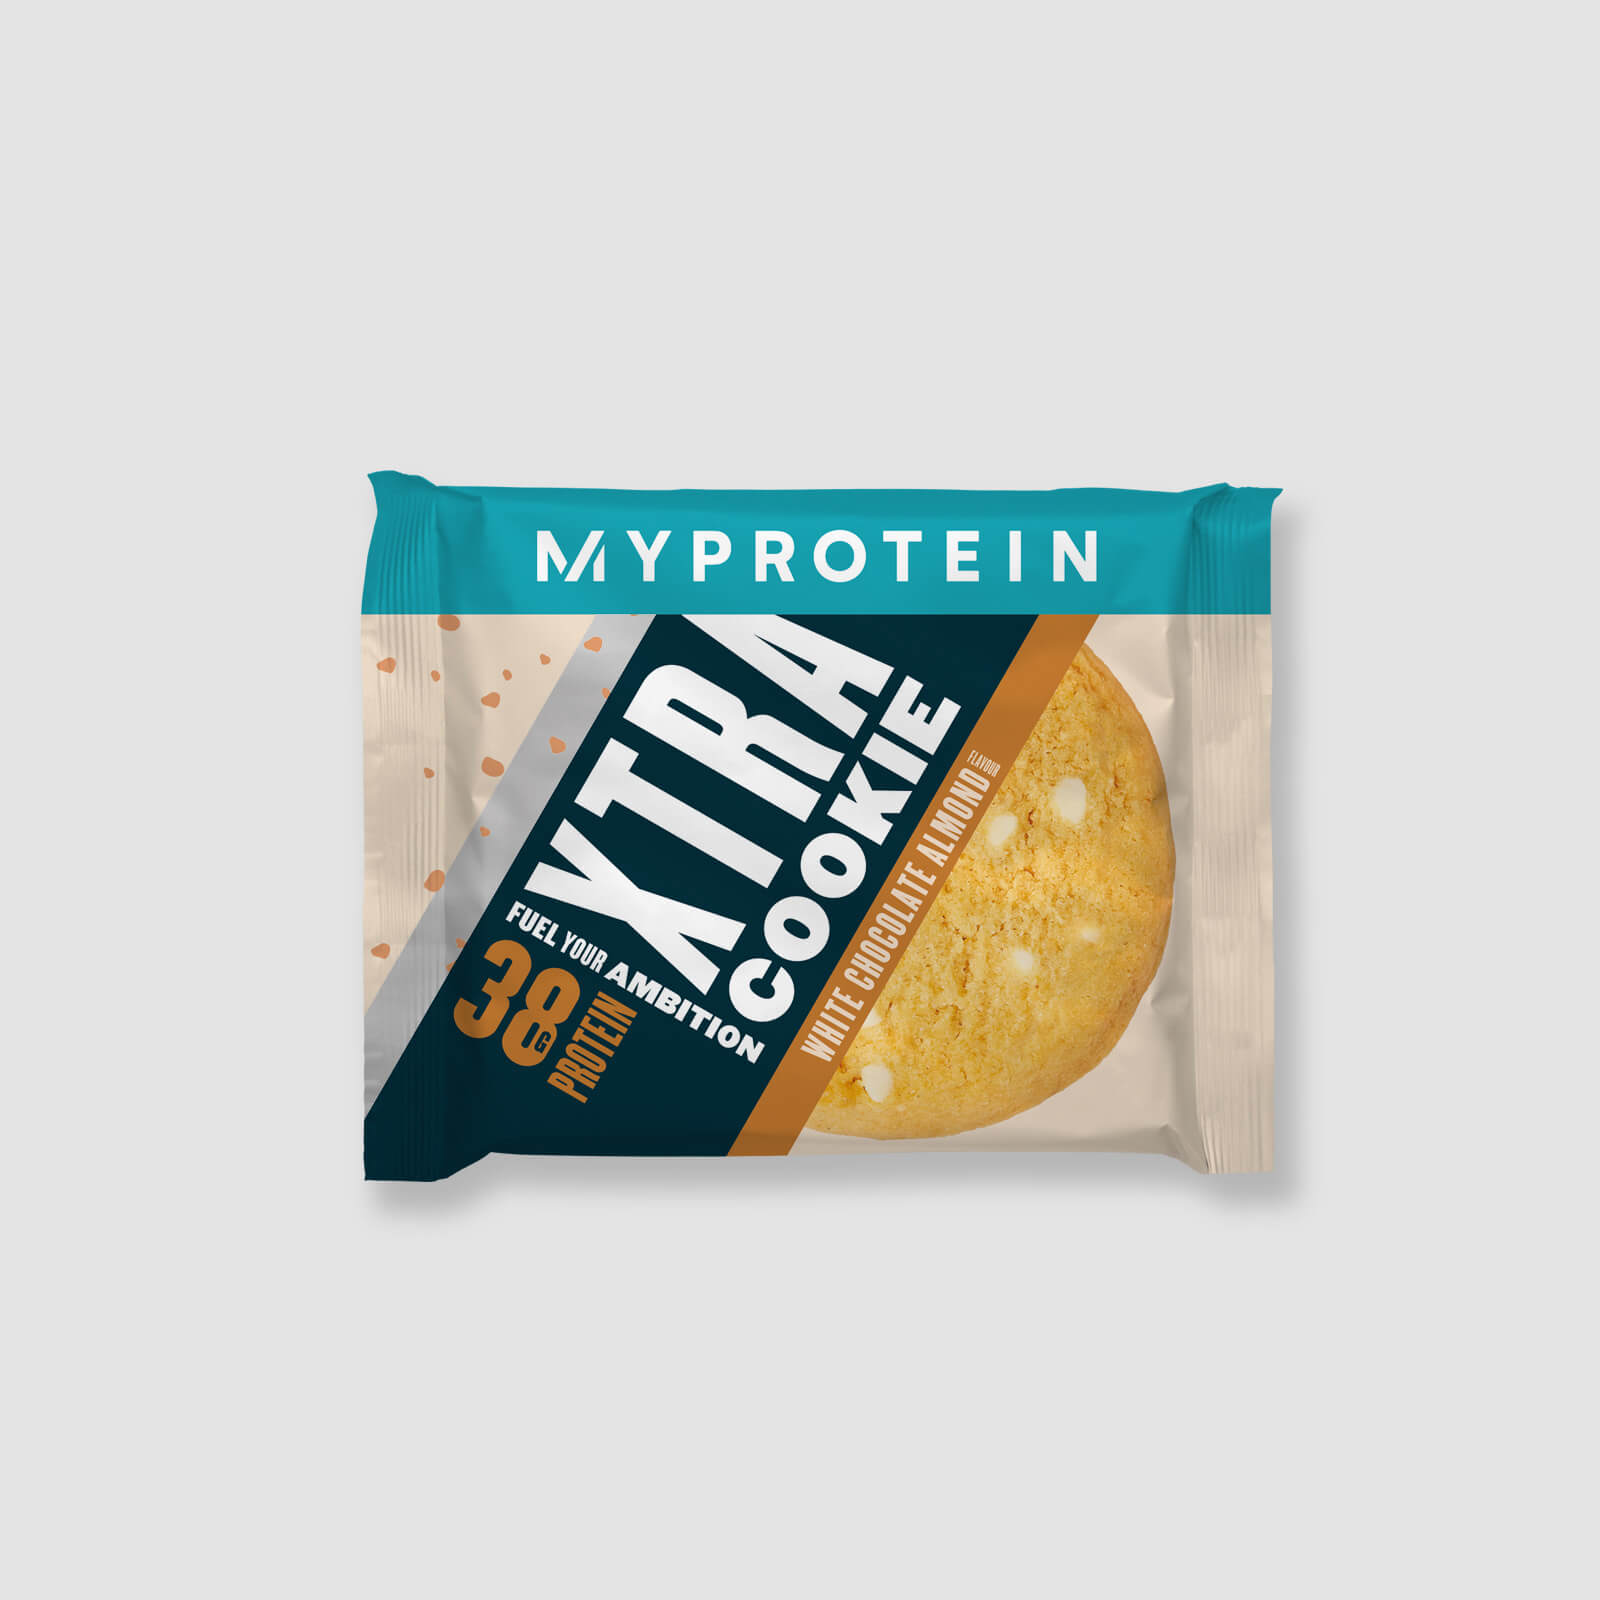 Myprotein Protein Cookie (Prøve) - Hvit Sjokolademandel